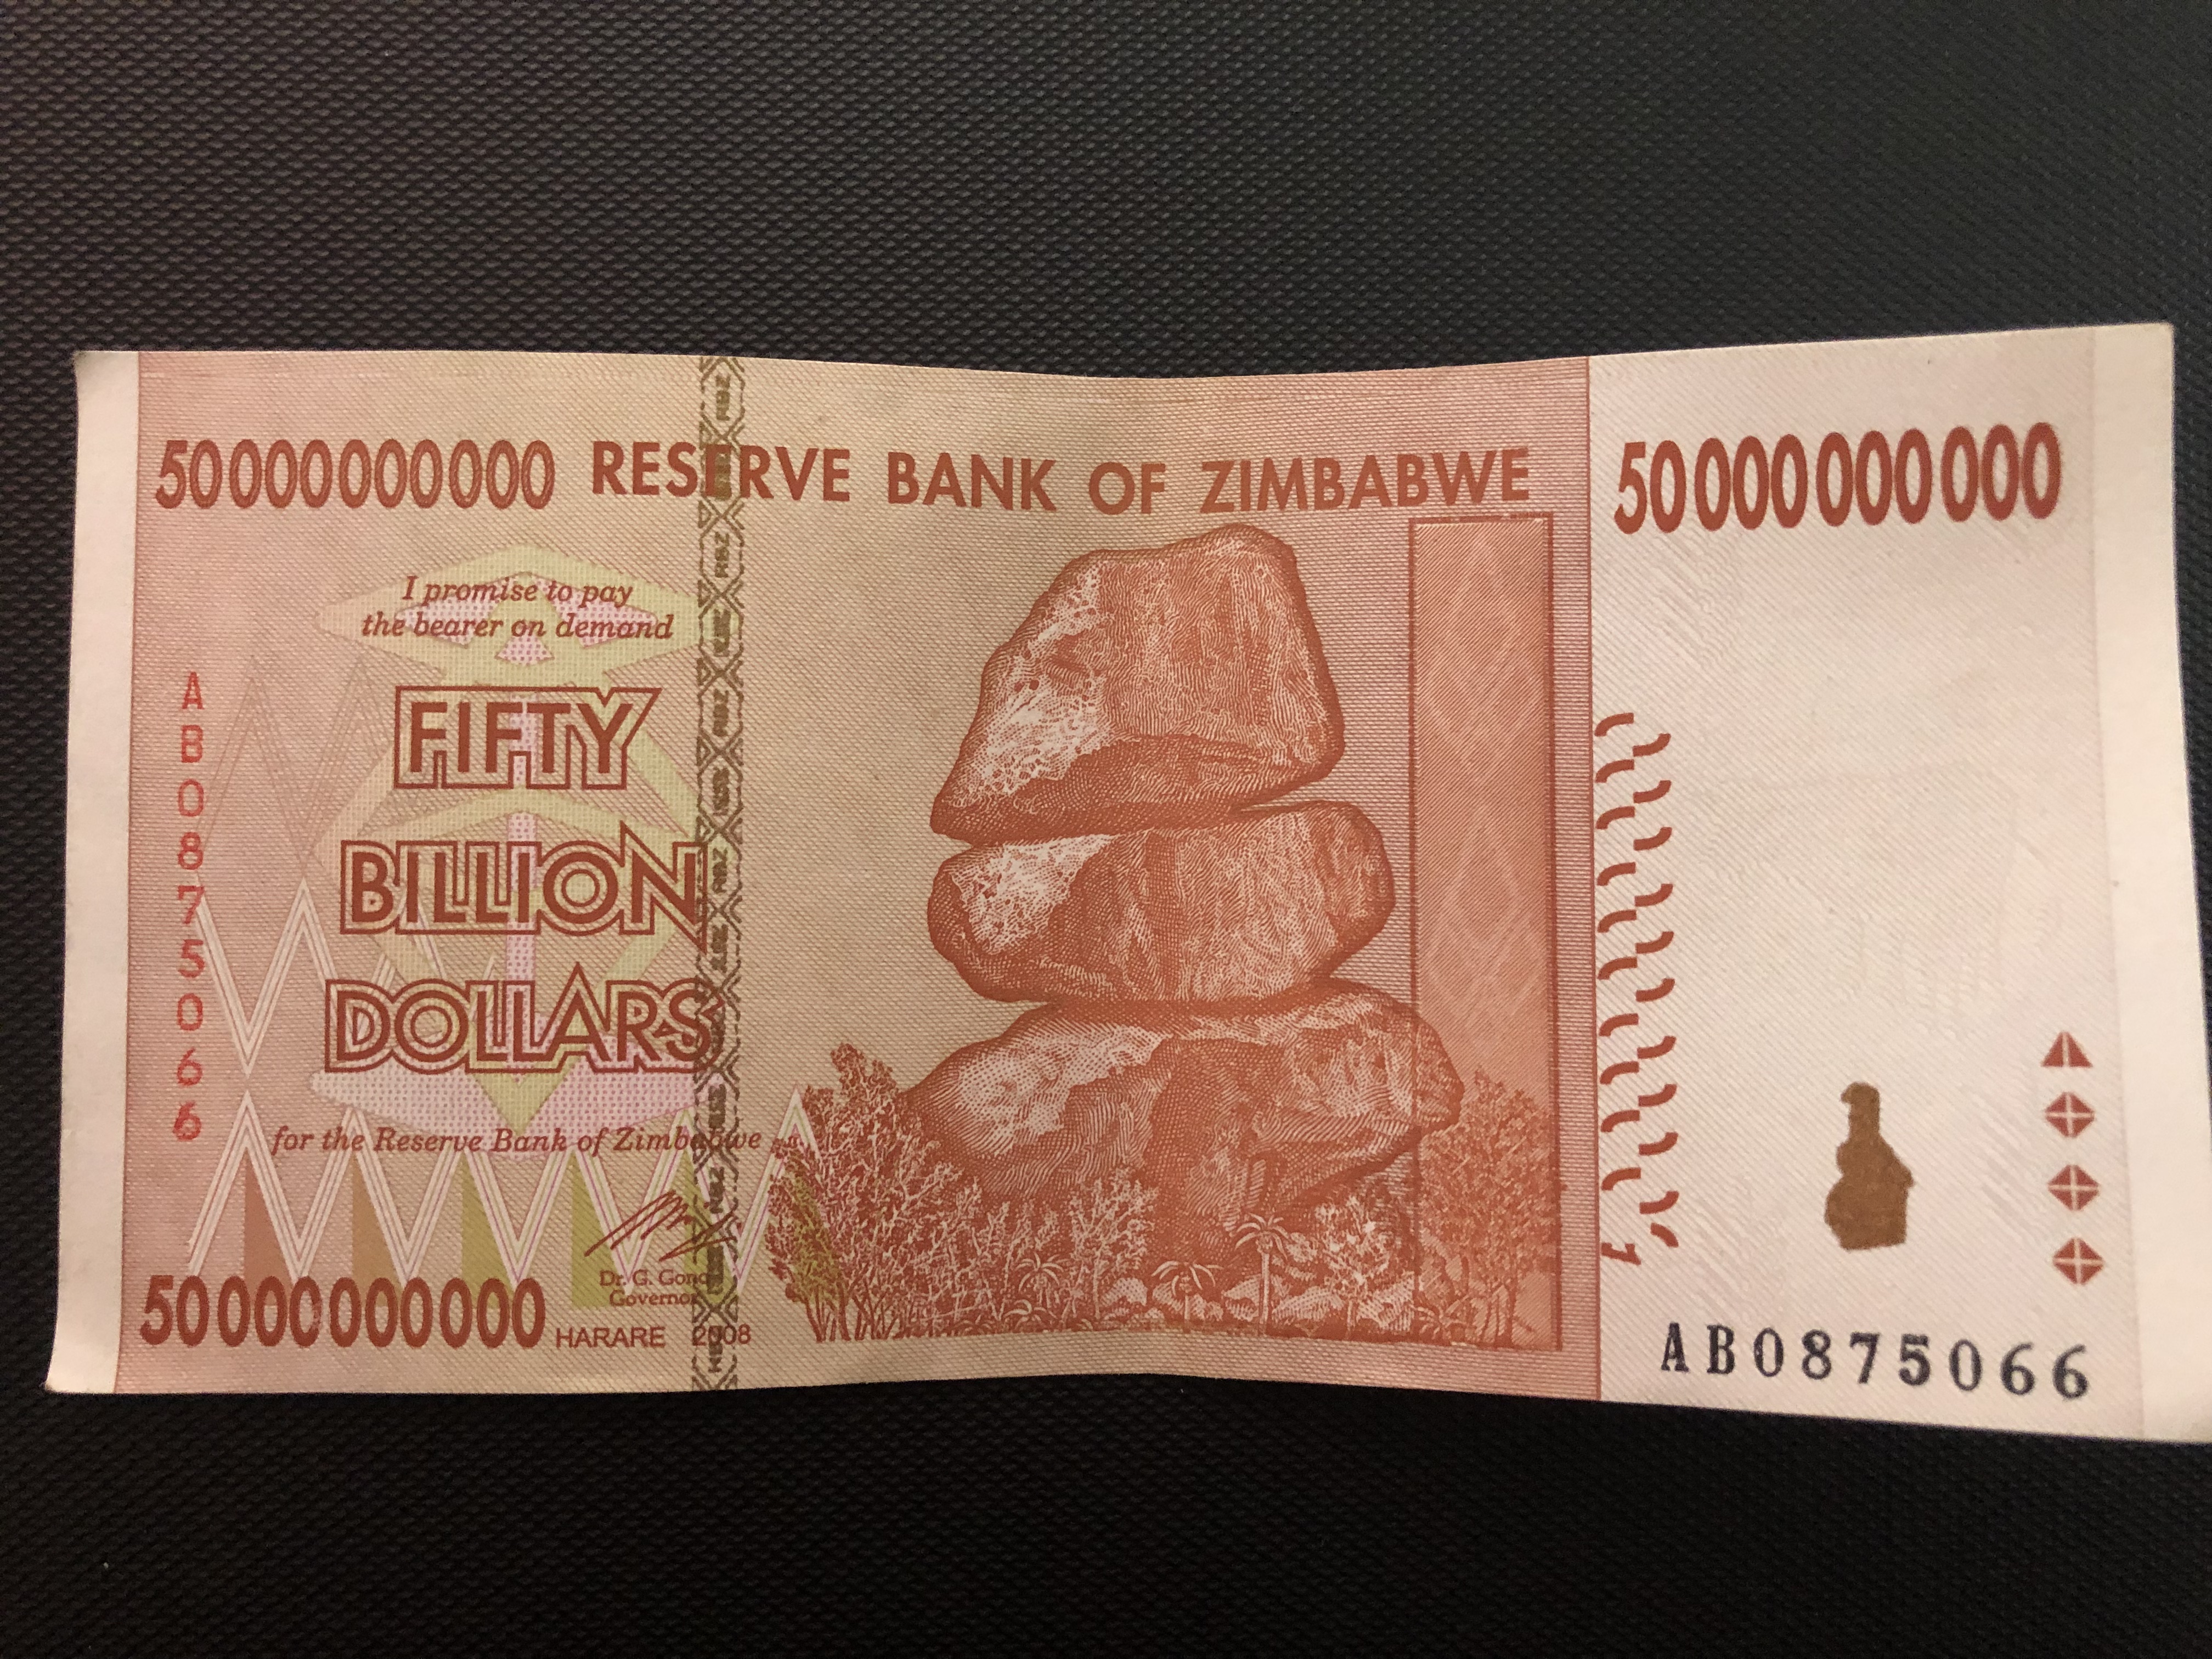 We’re billionaires... in Zimbabwe dollars no longer in use.